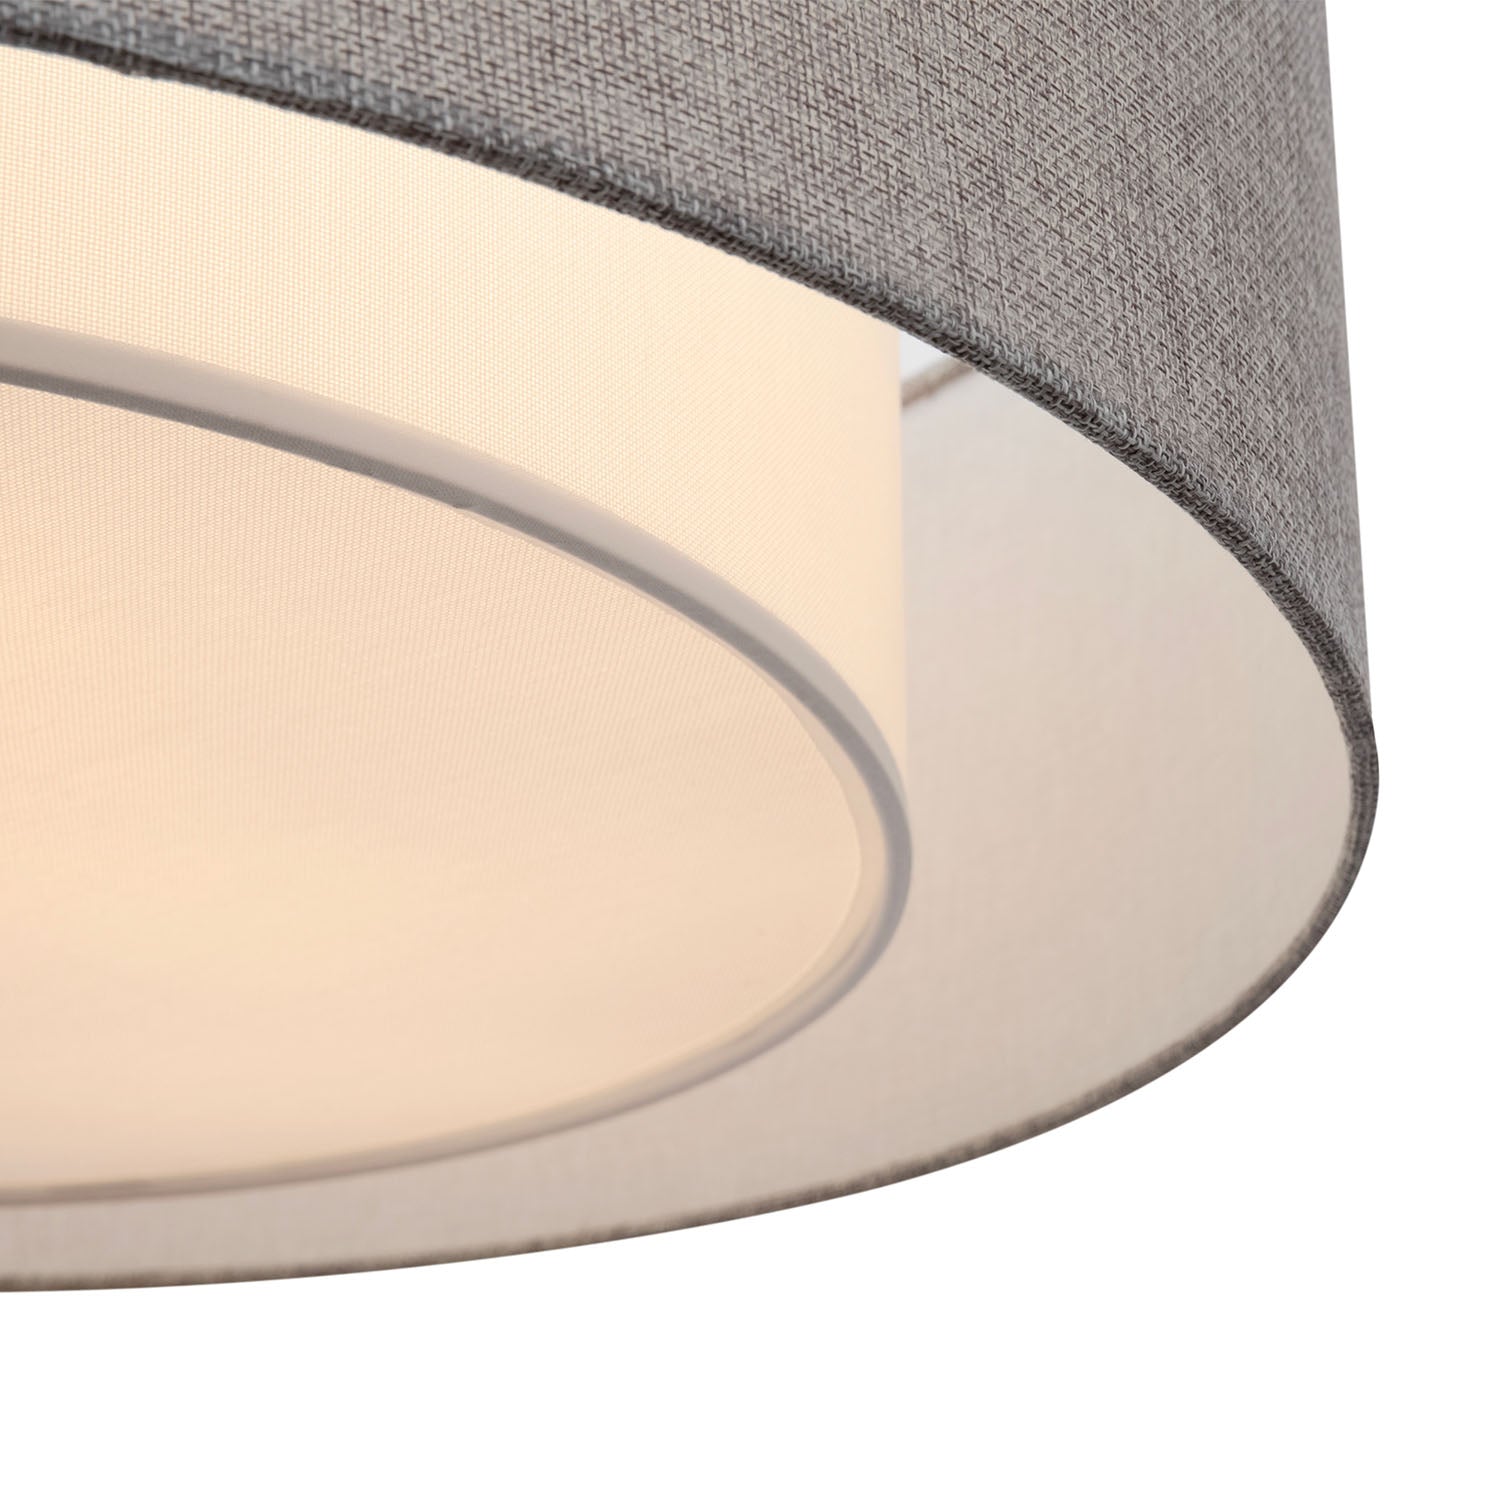 BERGAMO - Circular ceiling light in simple fabric